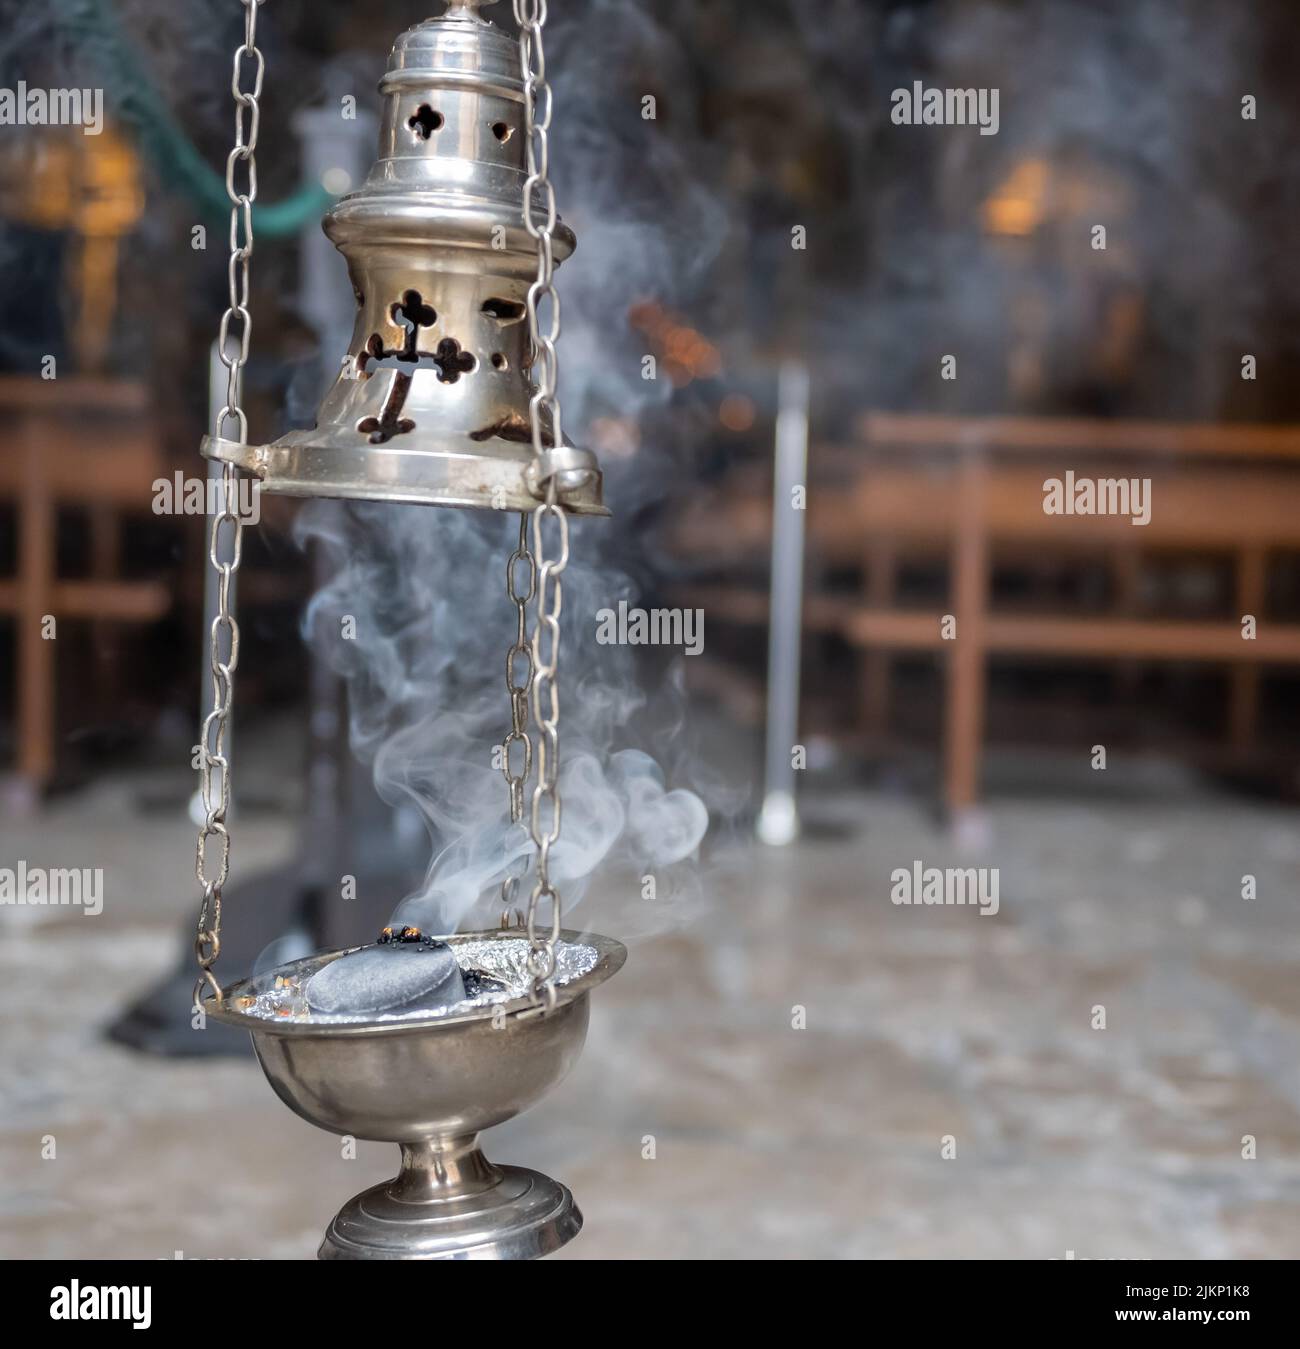 Hermoso incensario de plata encendido y repartiendo humo de incienso durante la semana santa de Valladolid, España Stockfoto